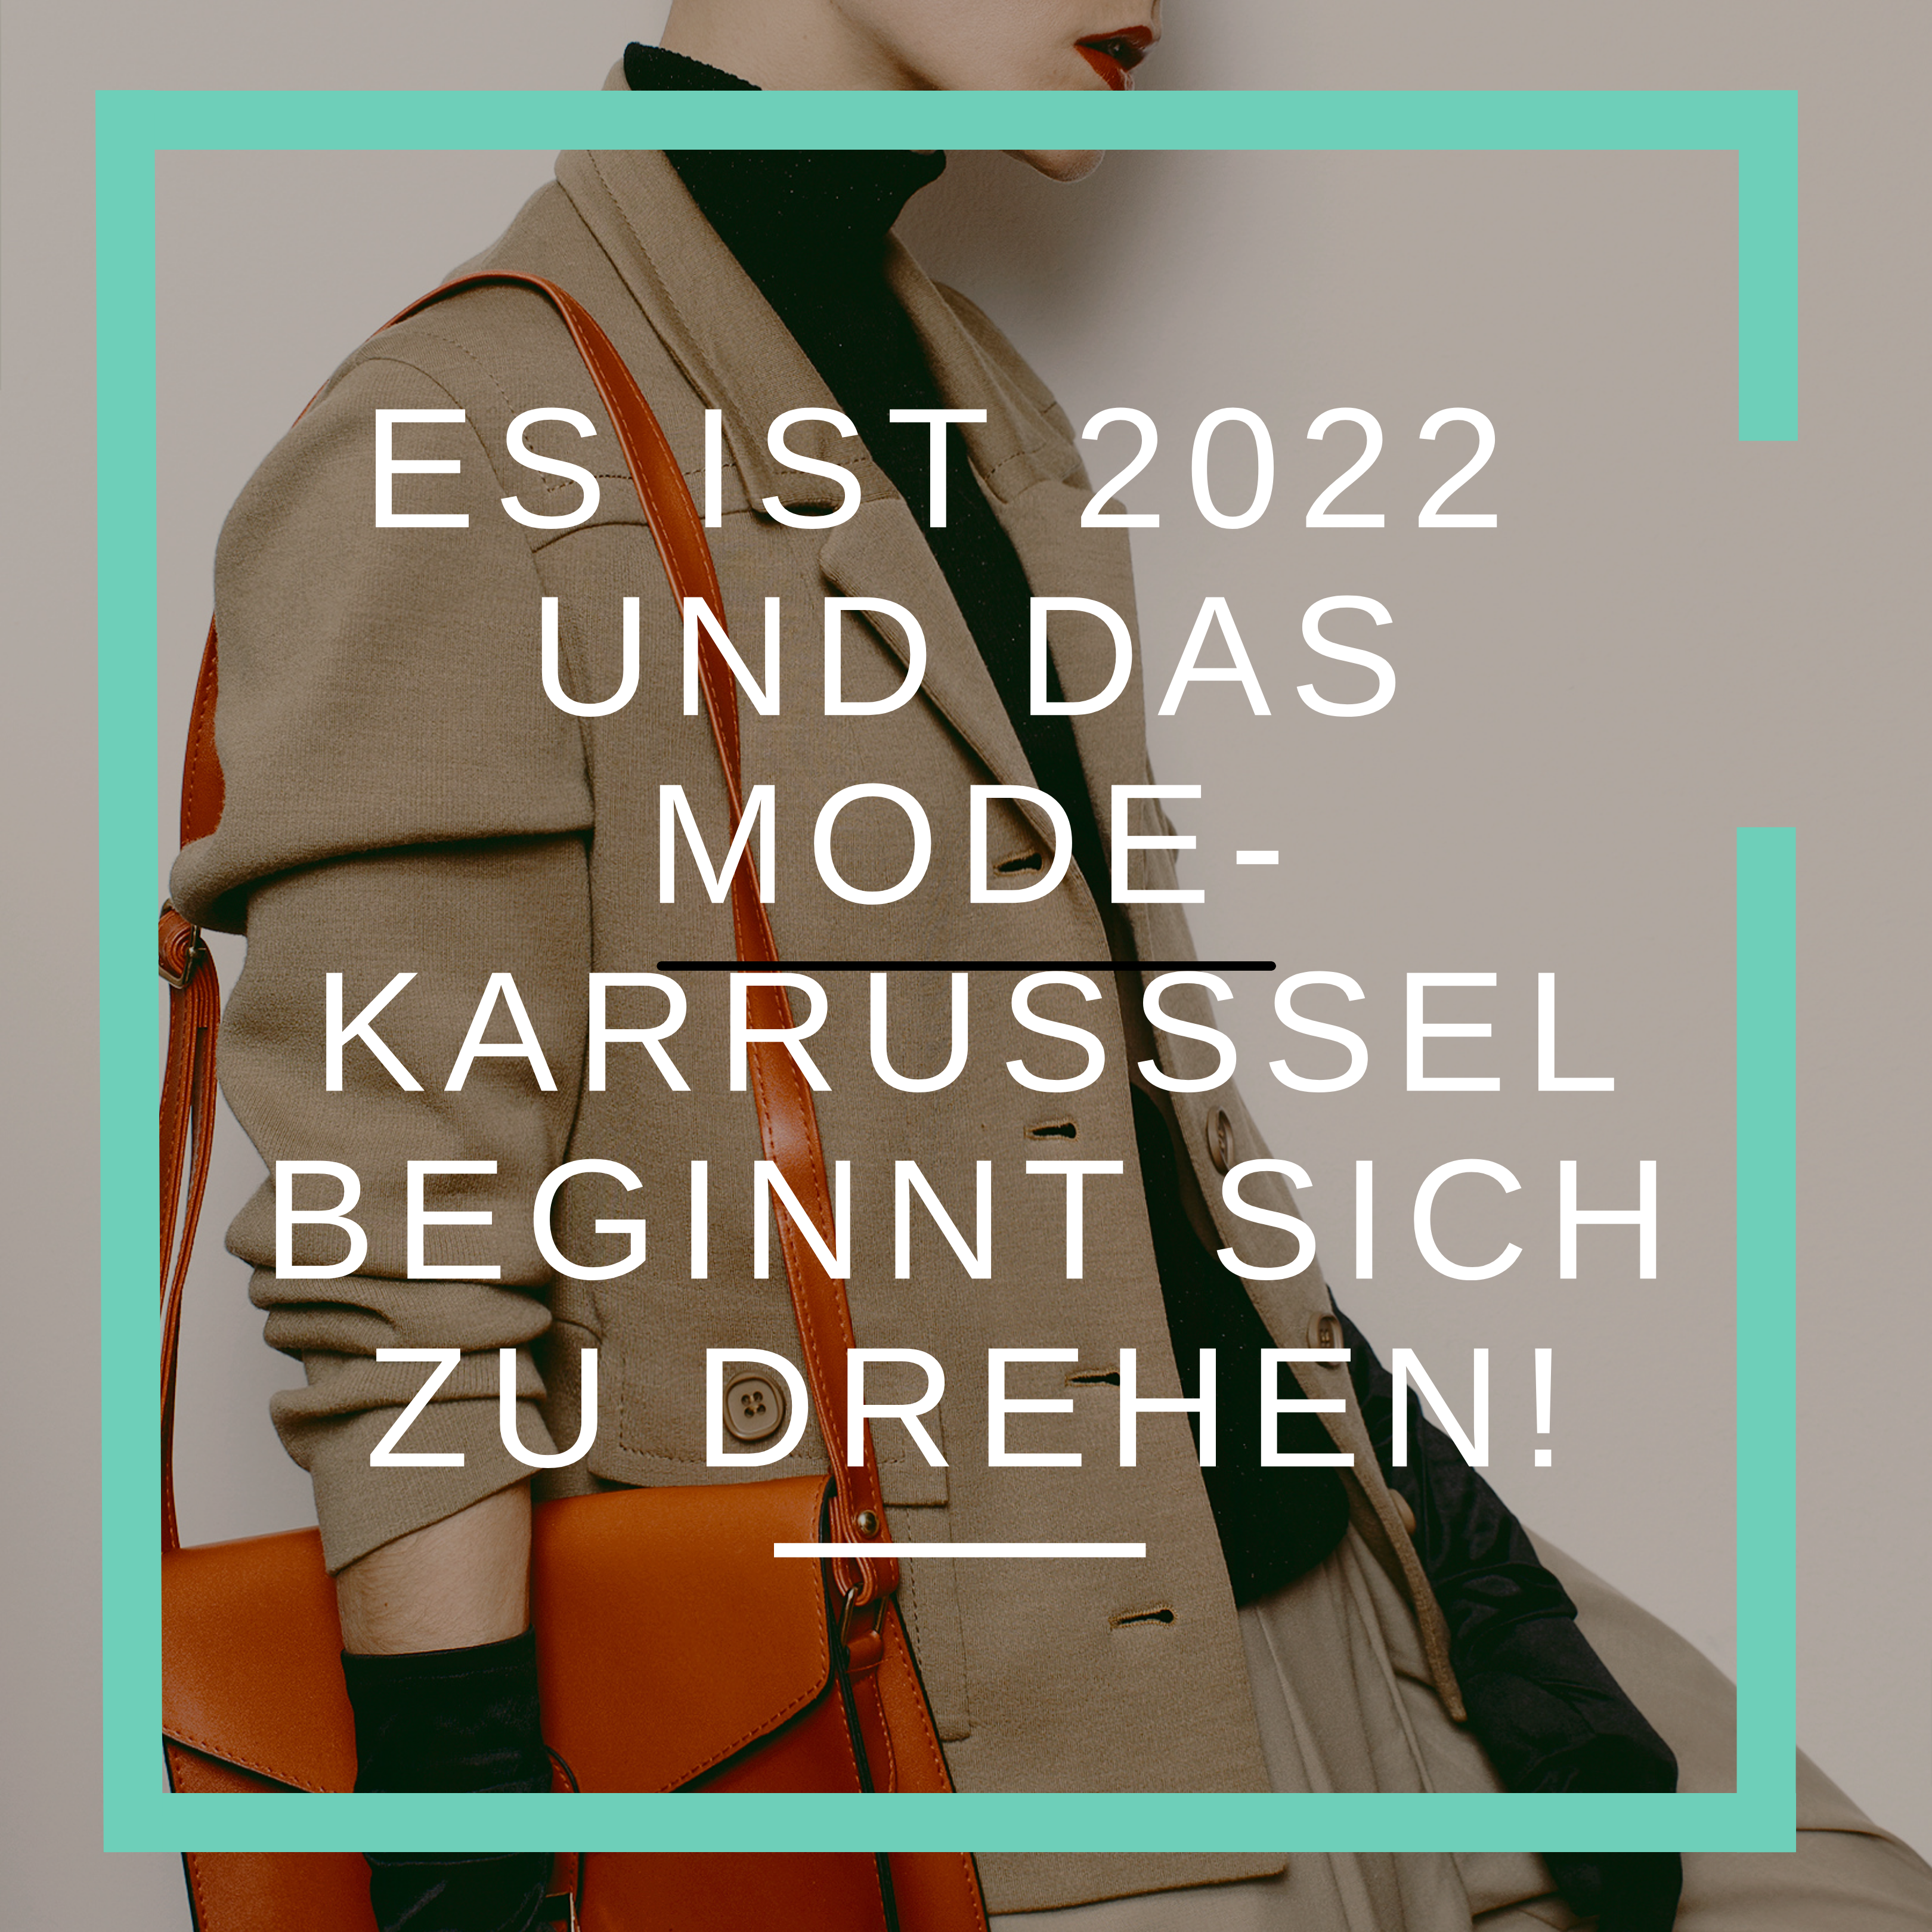 Es ist 2022 und das Mode-Karussell beginnt sich zu drehen!